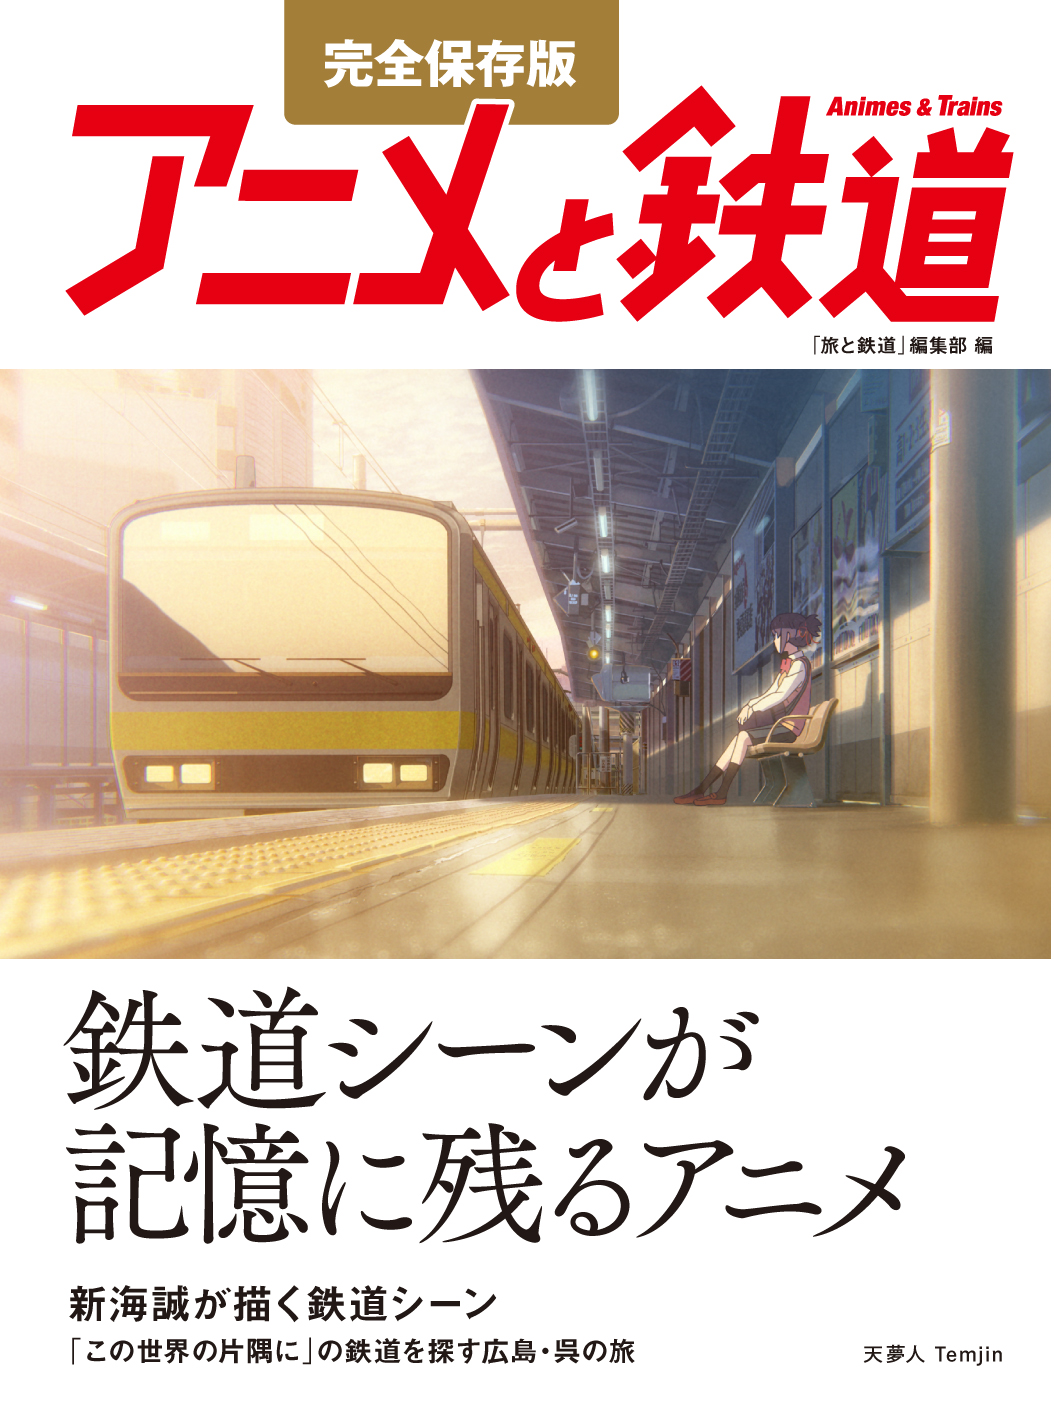 旅と鉄道 の人気企画 アニメと鉄道 が 完全保存版の単行本として発刊 株式会社インプレスホールディングスのプレスリリース